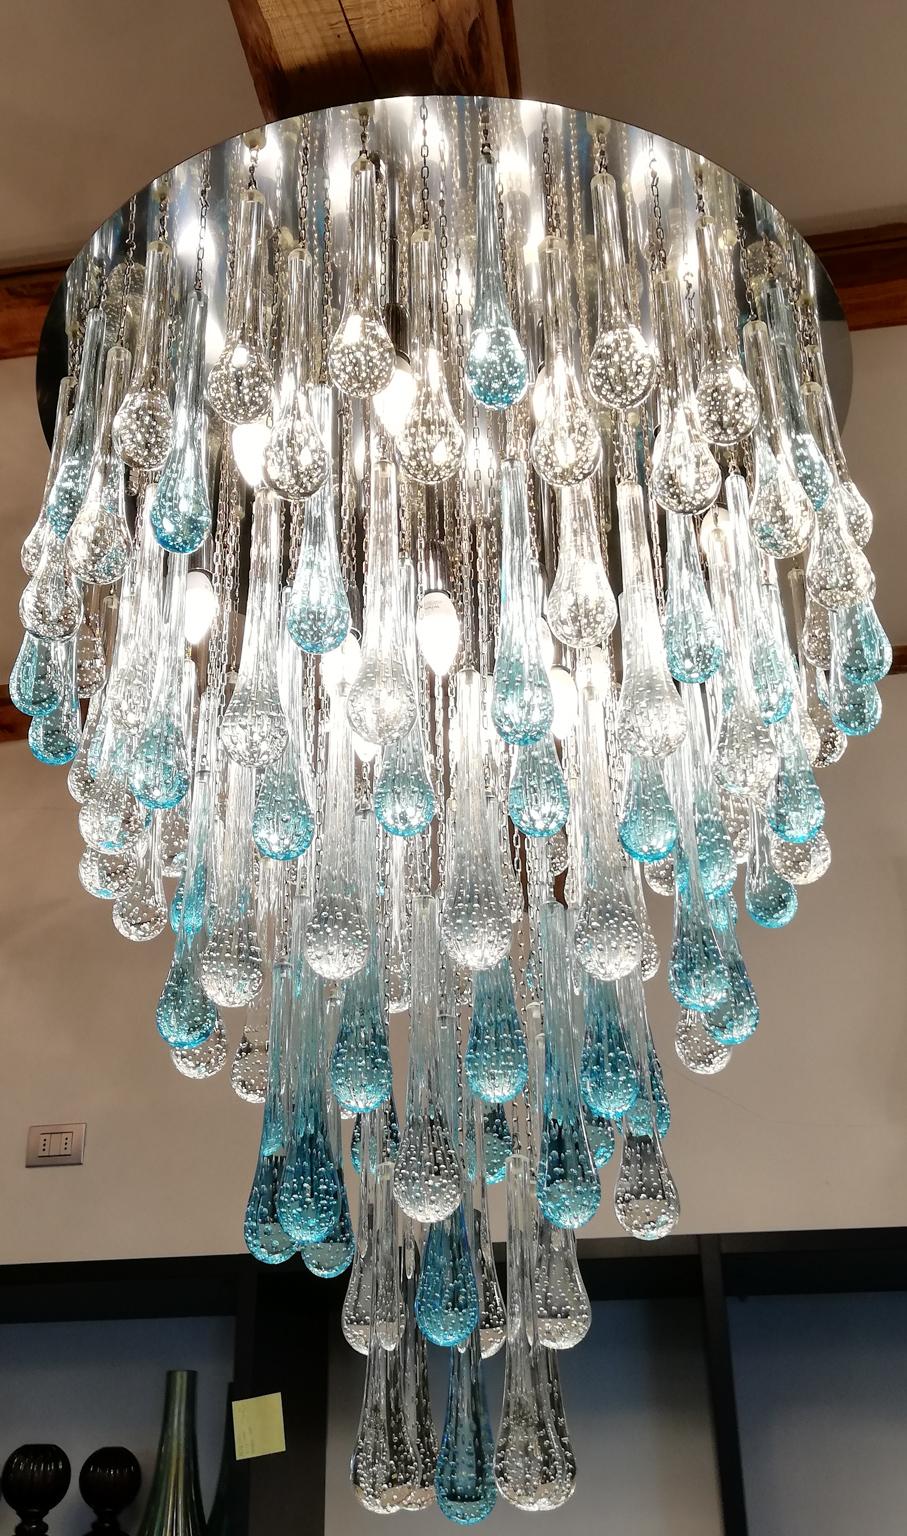 Il s'agit d'un plafonnier très spécial, articulé par 155 éléments en verre appelés, bien sûr, pour leur forme, 